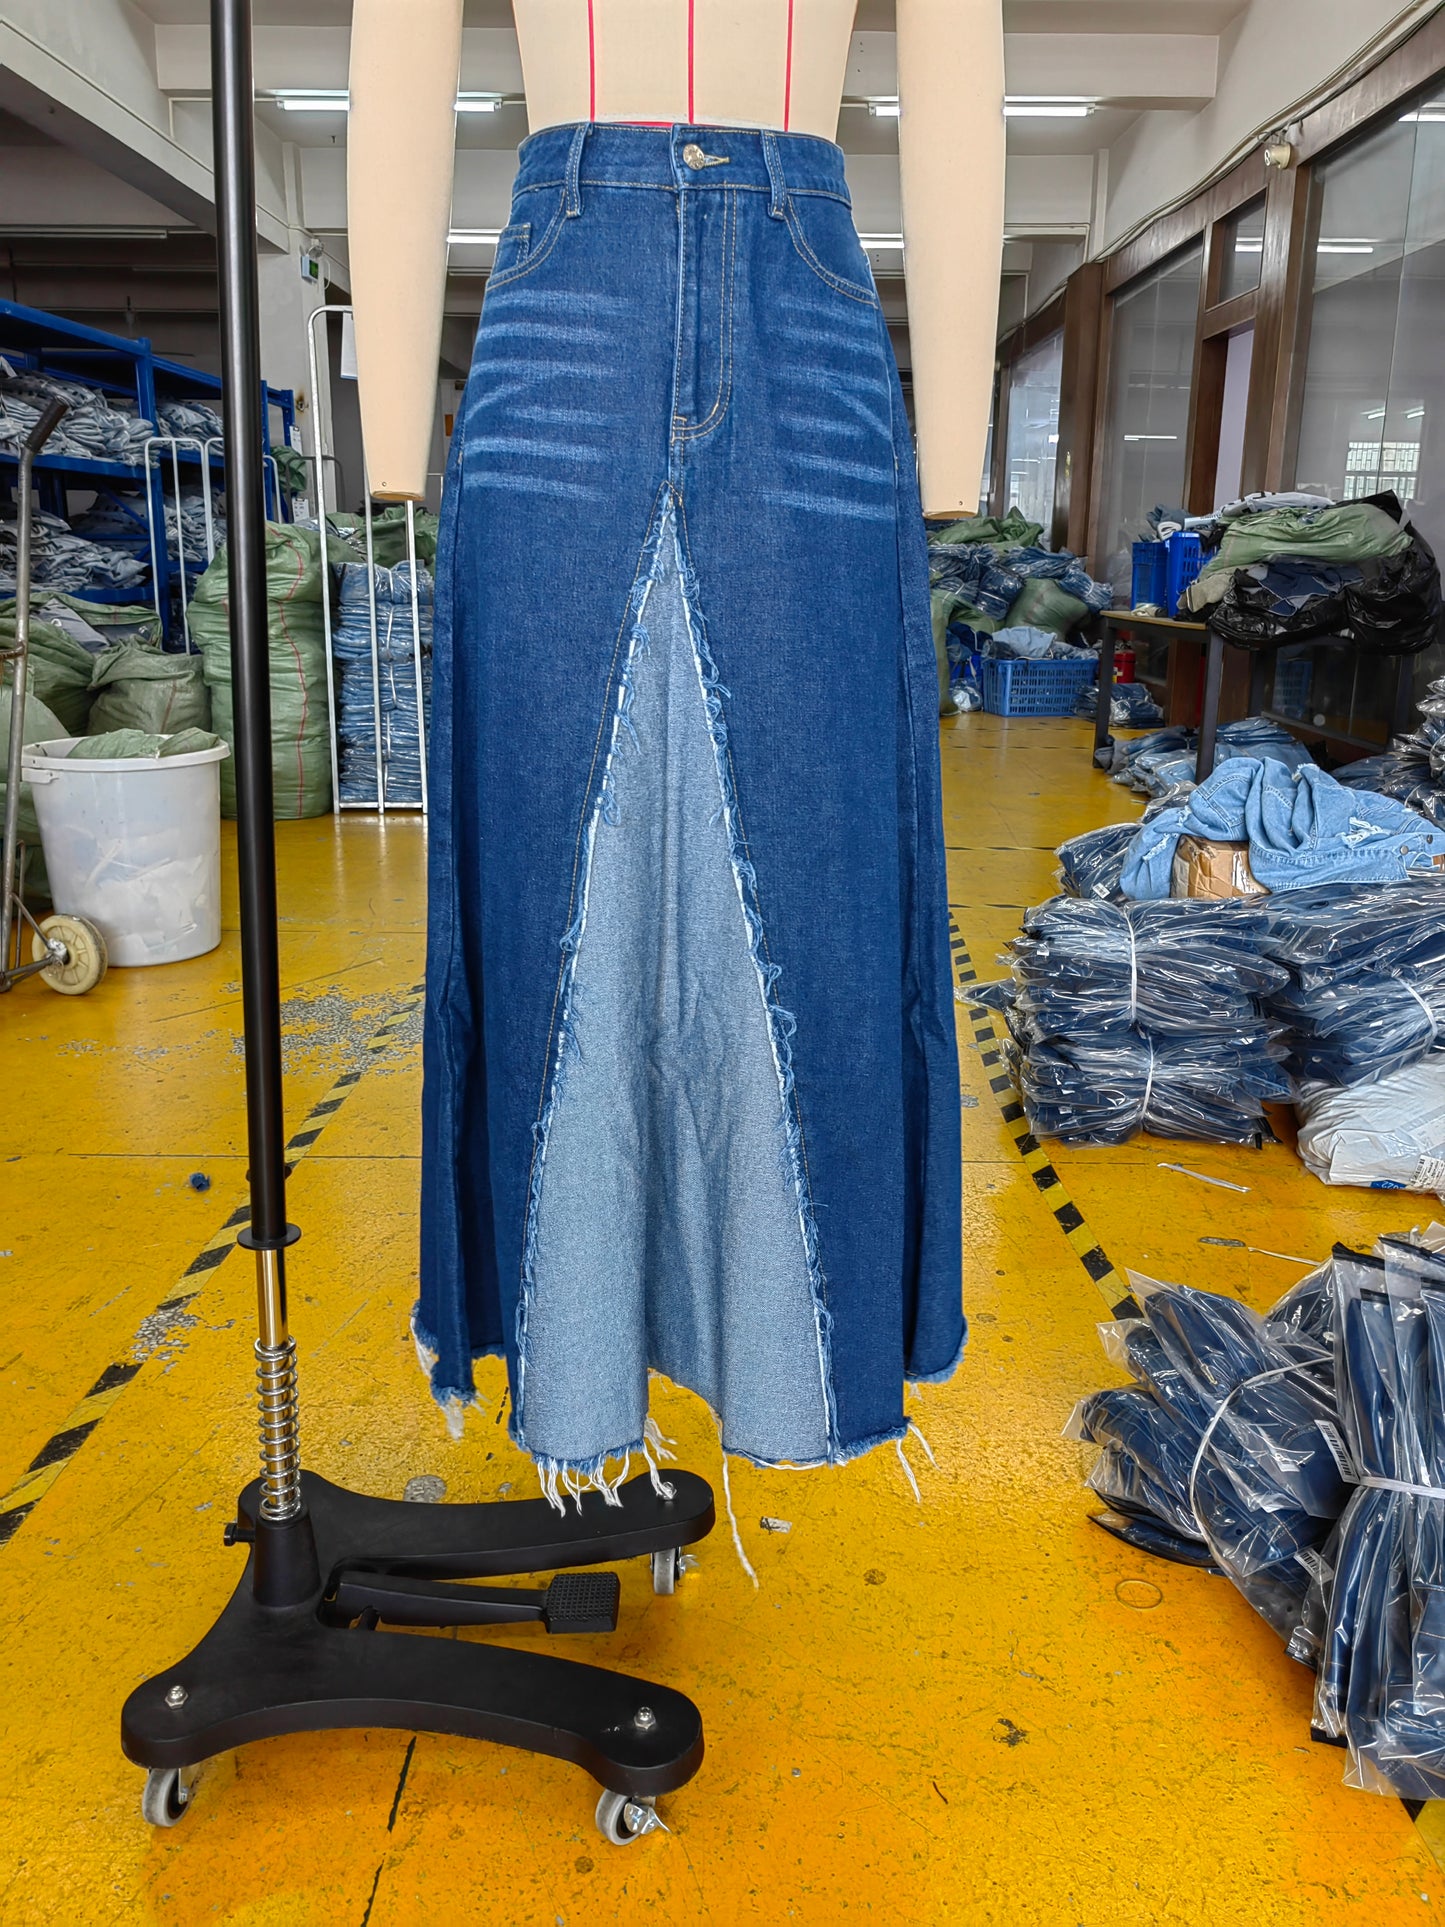 BamBam Fashion Hem Patchwork A-Line Denim Long Skirt - BamBam